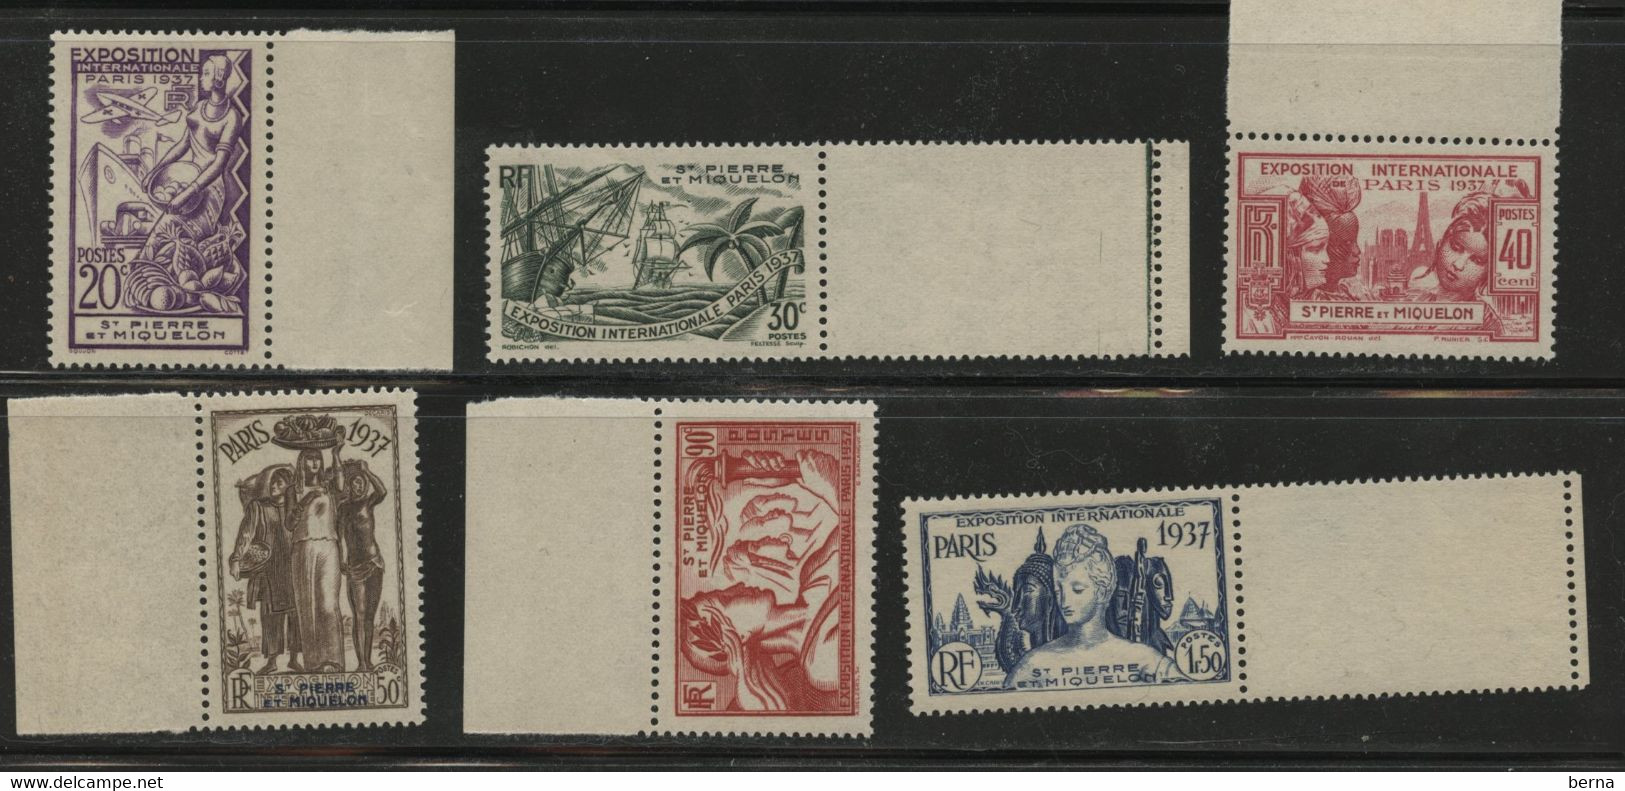 SAINT PIERRE ET MIQUELON 160/165 EXPO DE PARIS LUXE NEUF SANS CHARNIERE - Unused Stamps